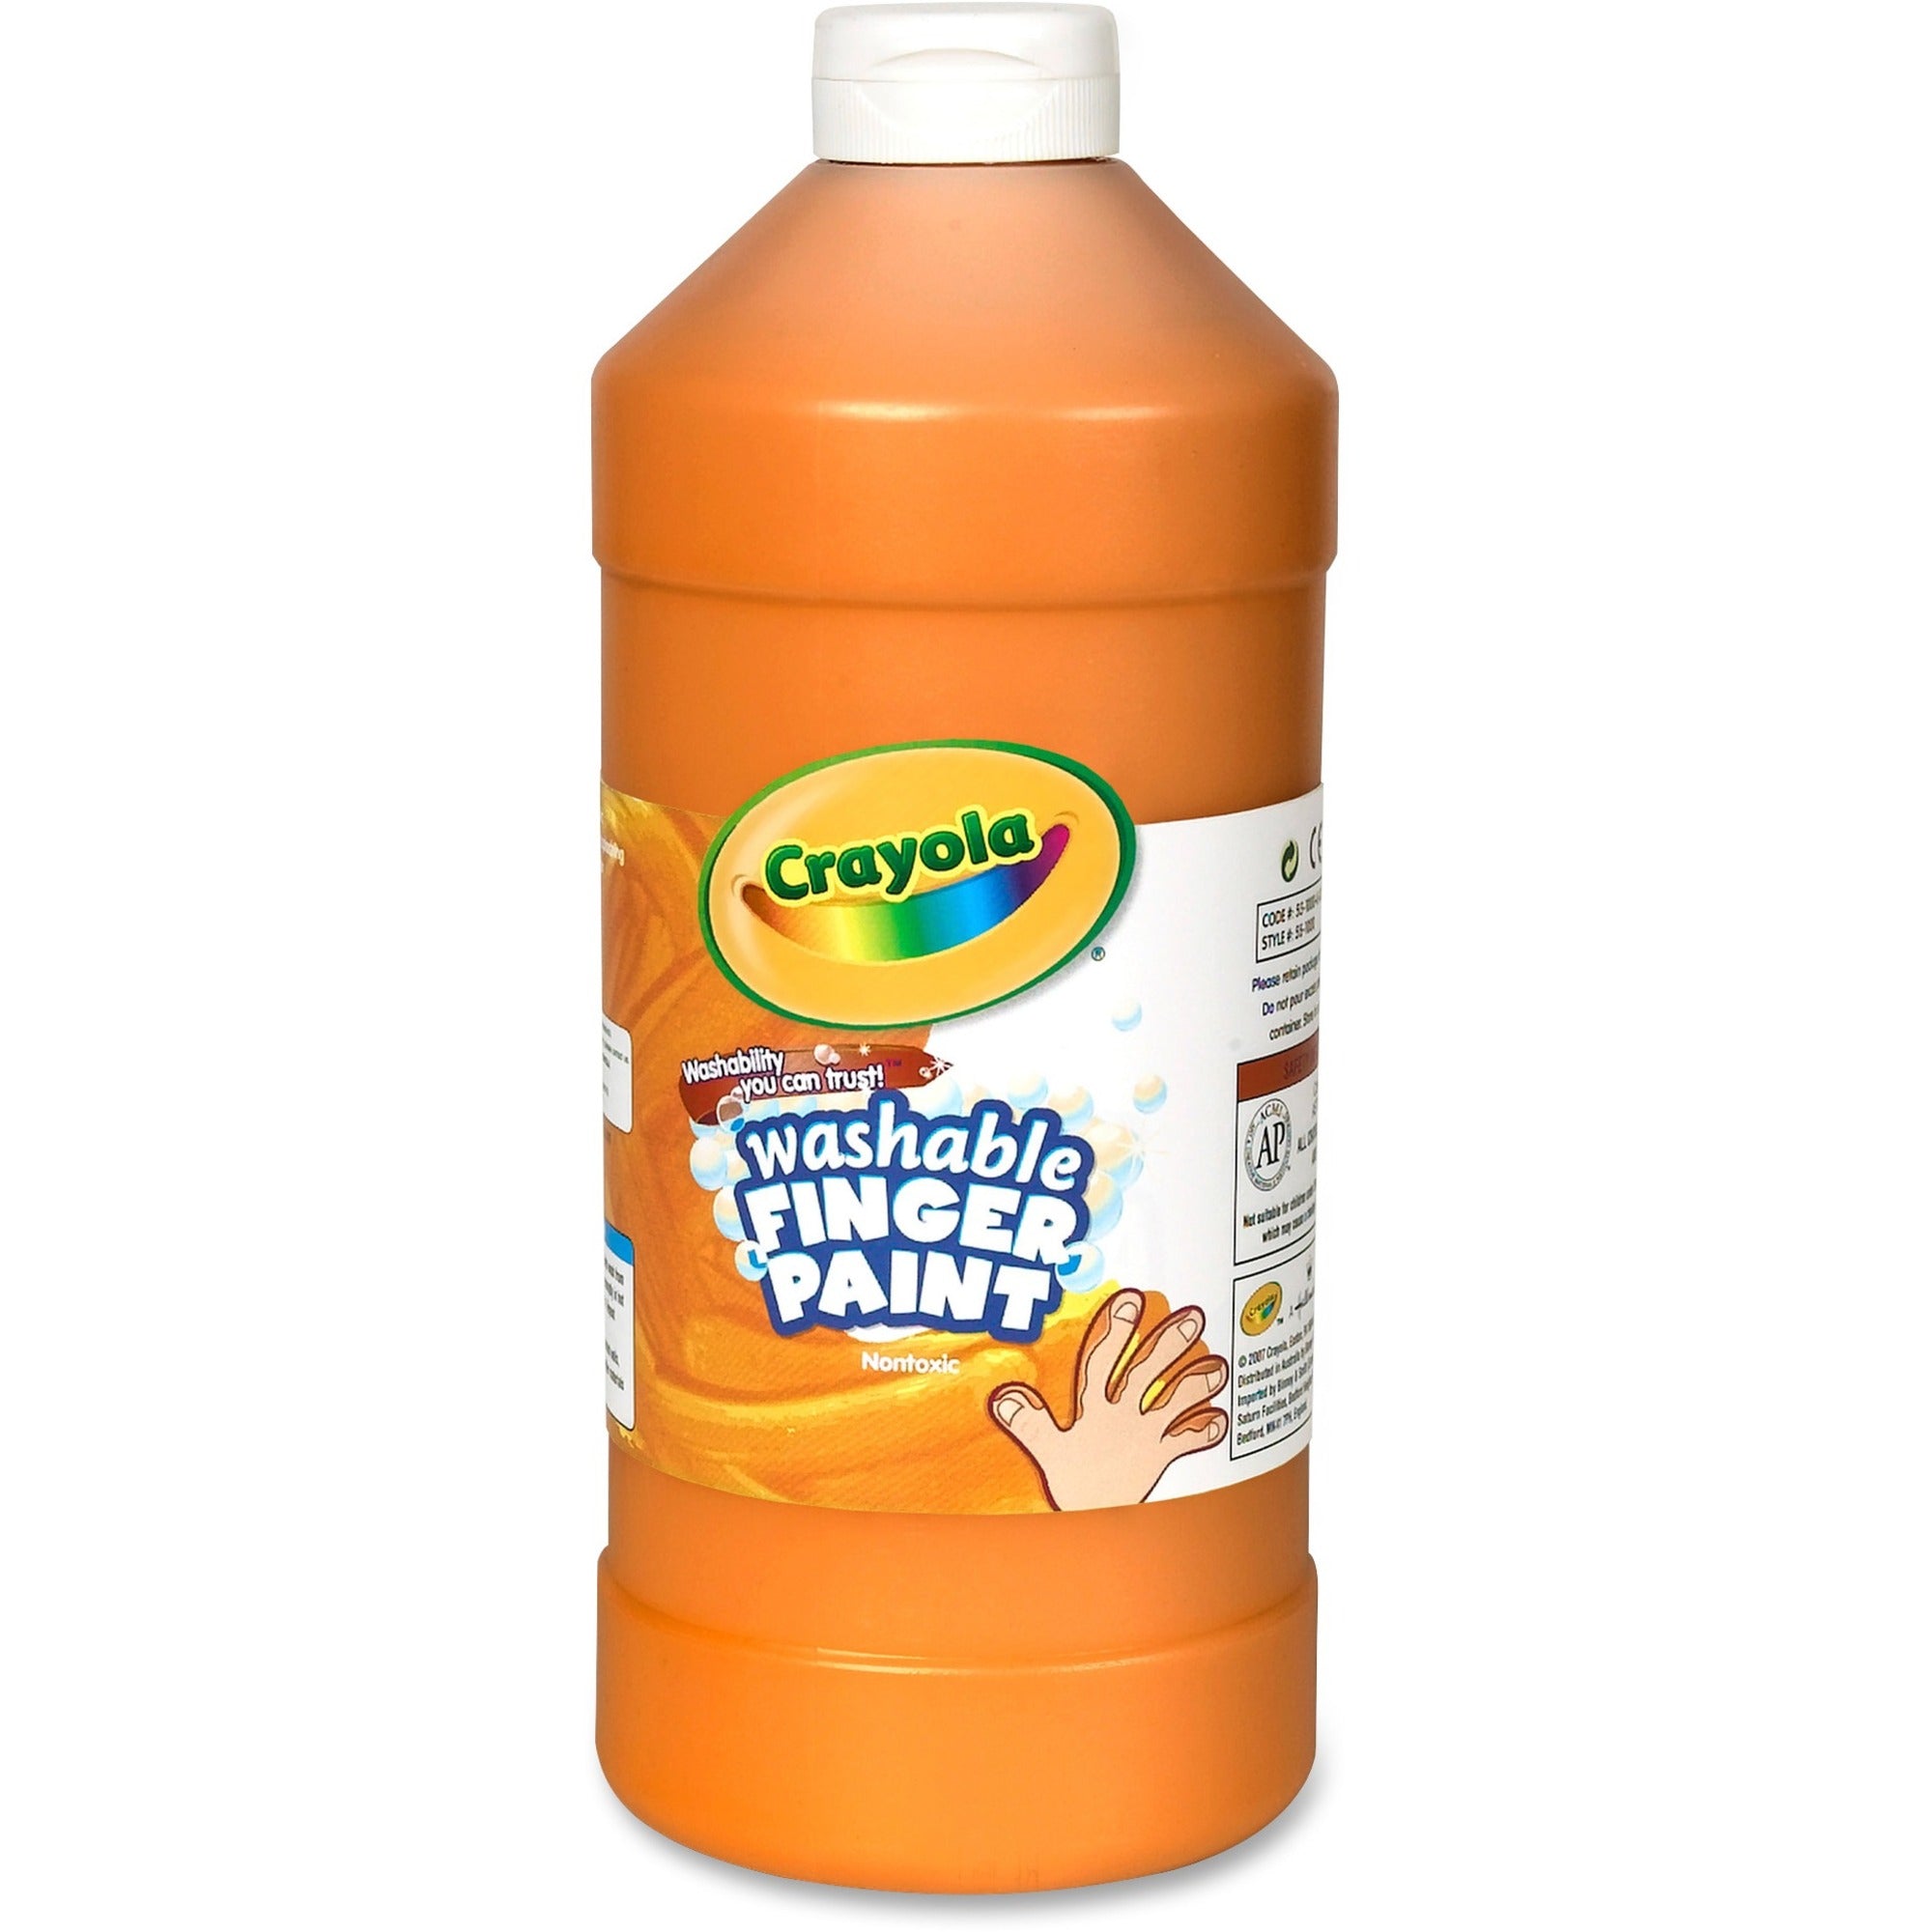 Crayola Washable Finger Paint - 2 lb - 1 Each - Orange - 